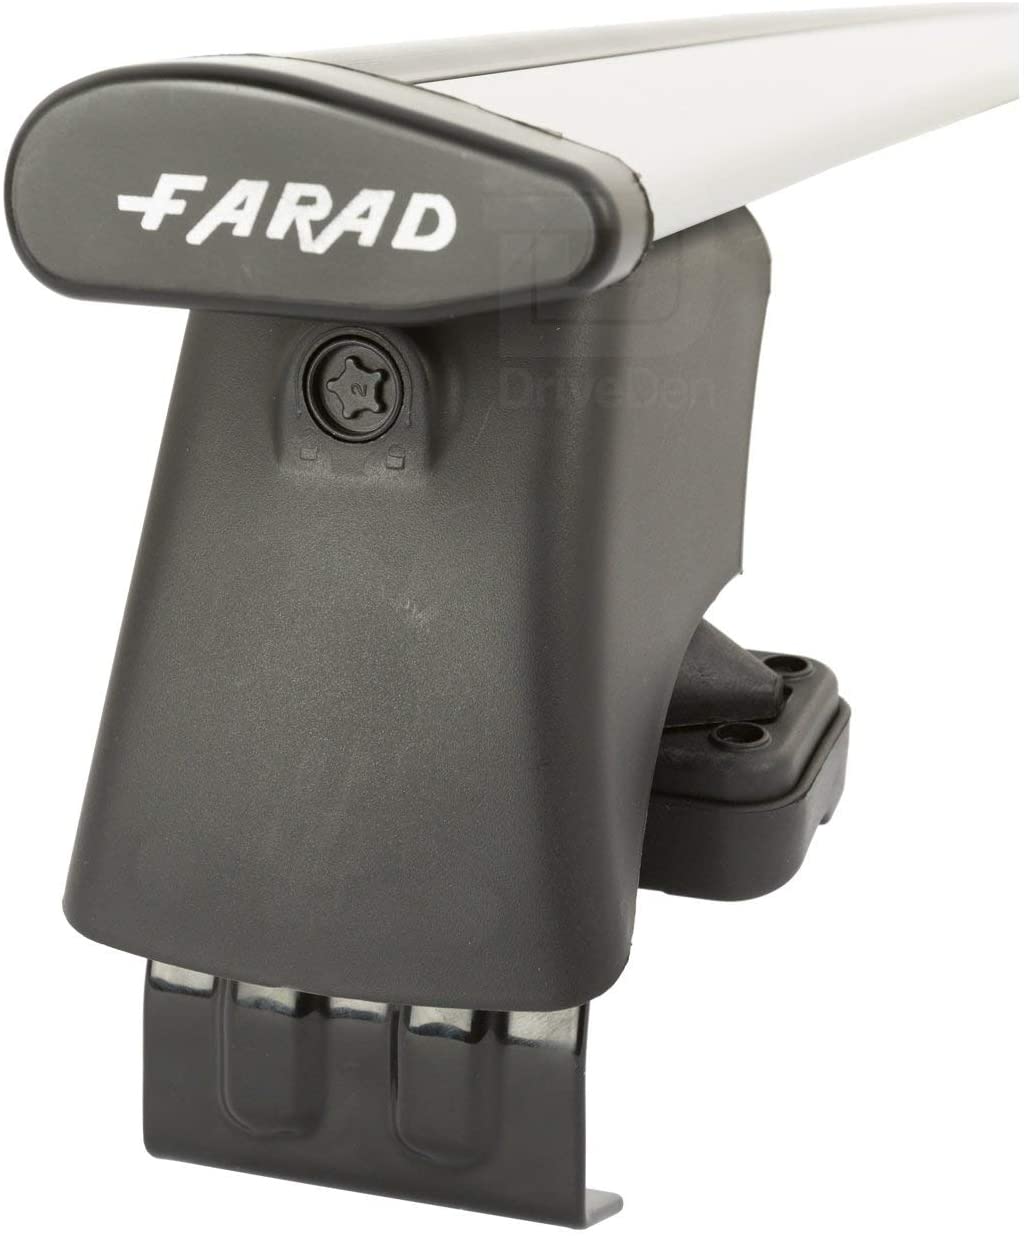 FARAD-Kit H2 per barre portatutto - Audi A4 2001-2007 (senza corrimano)